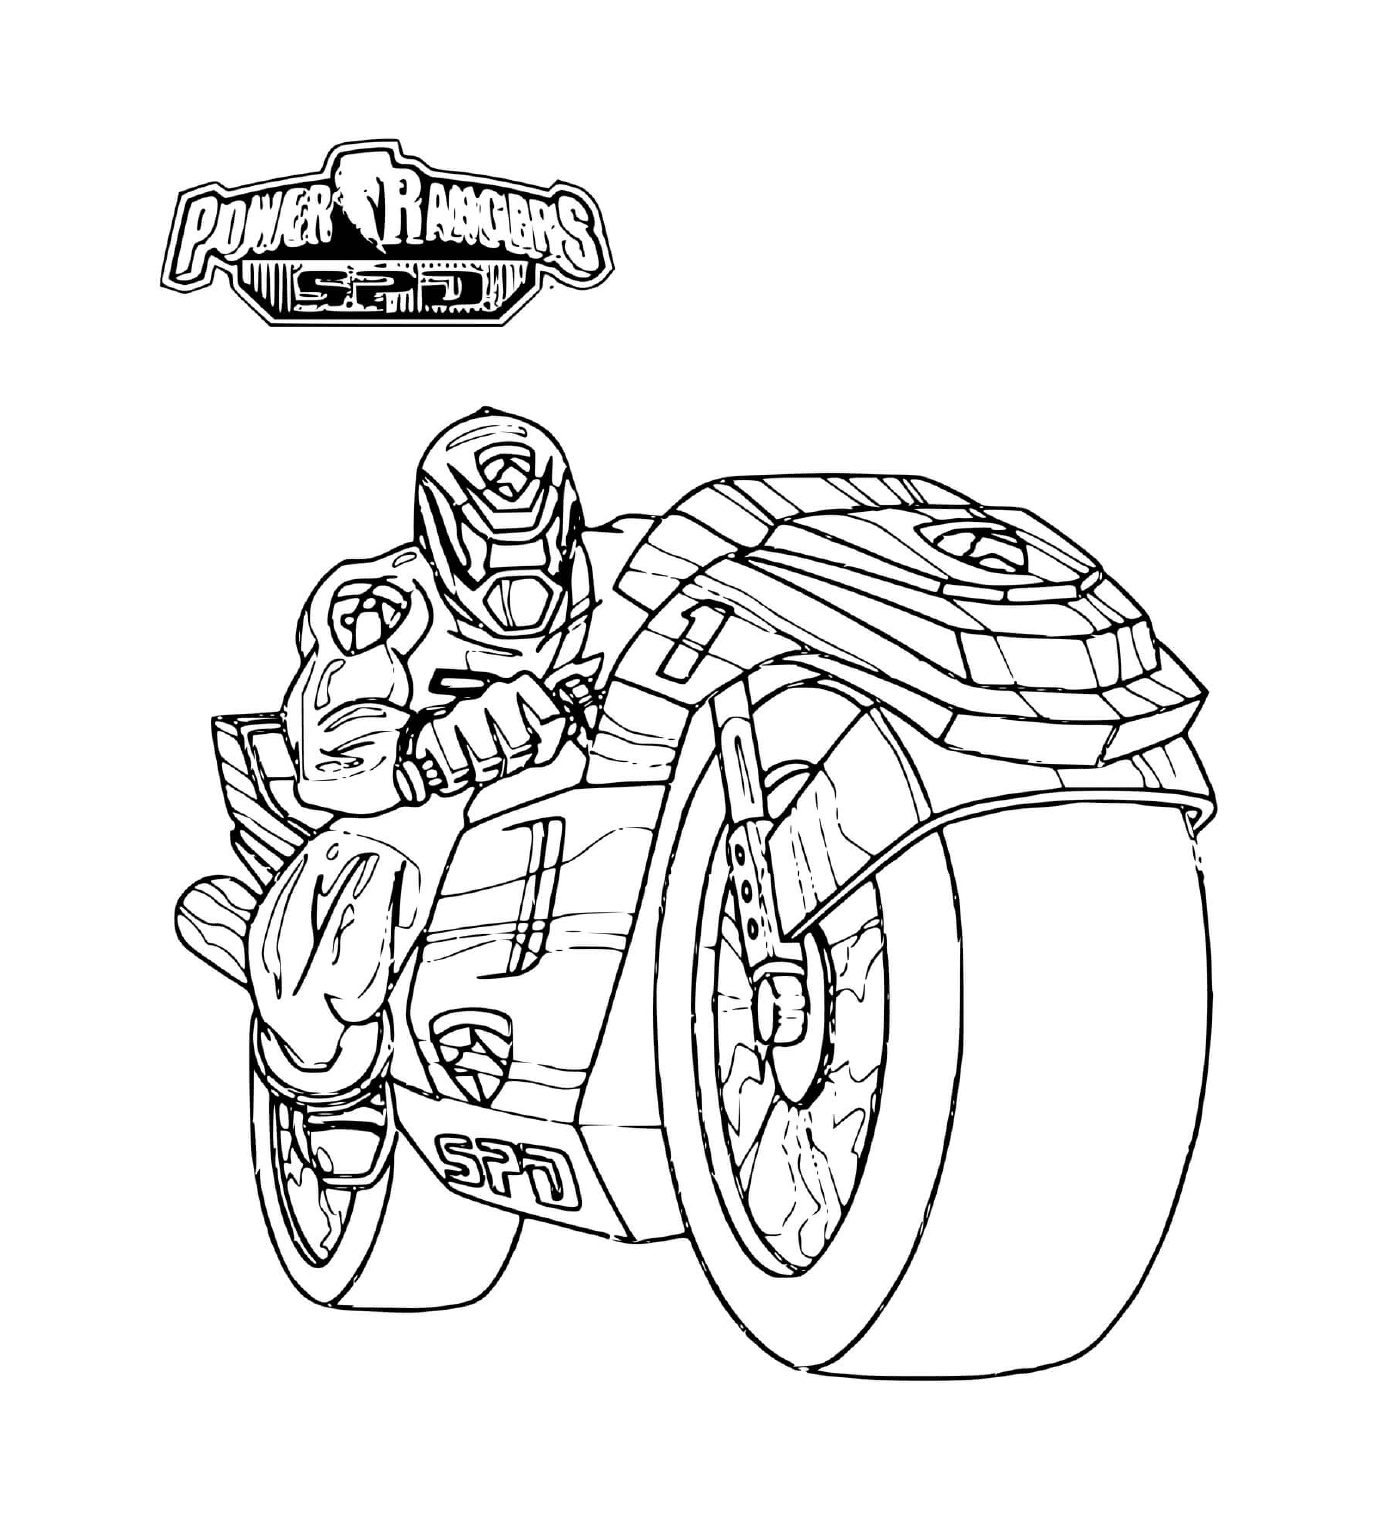  Power Ranger montando una motocicleta 